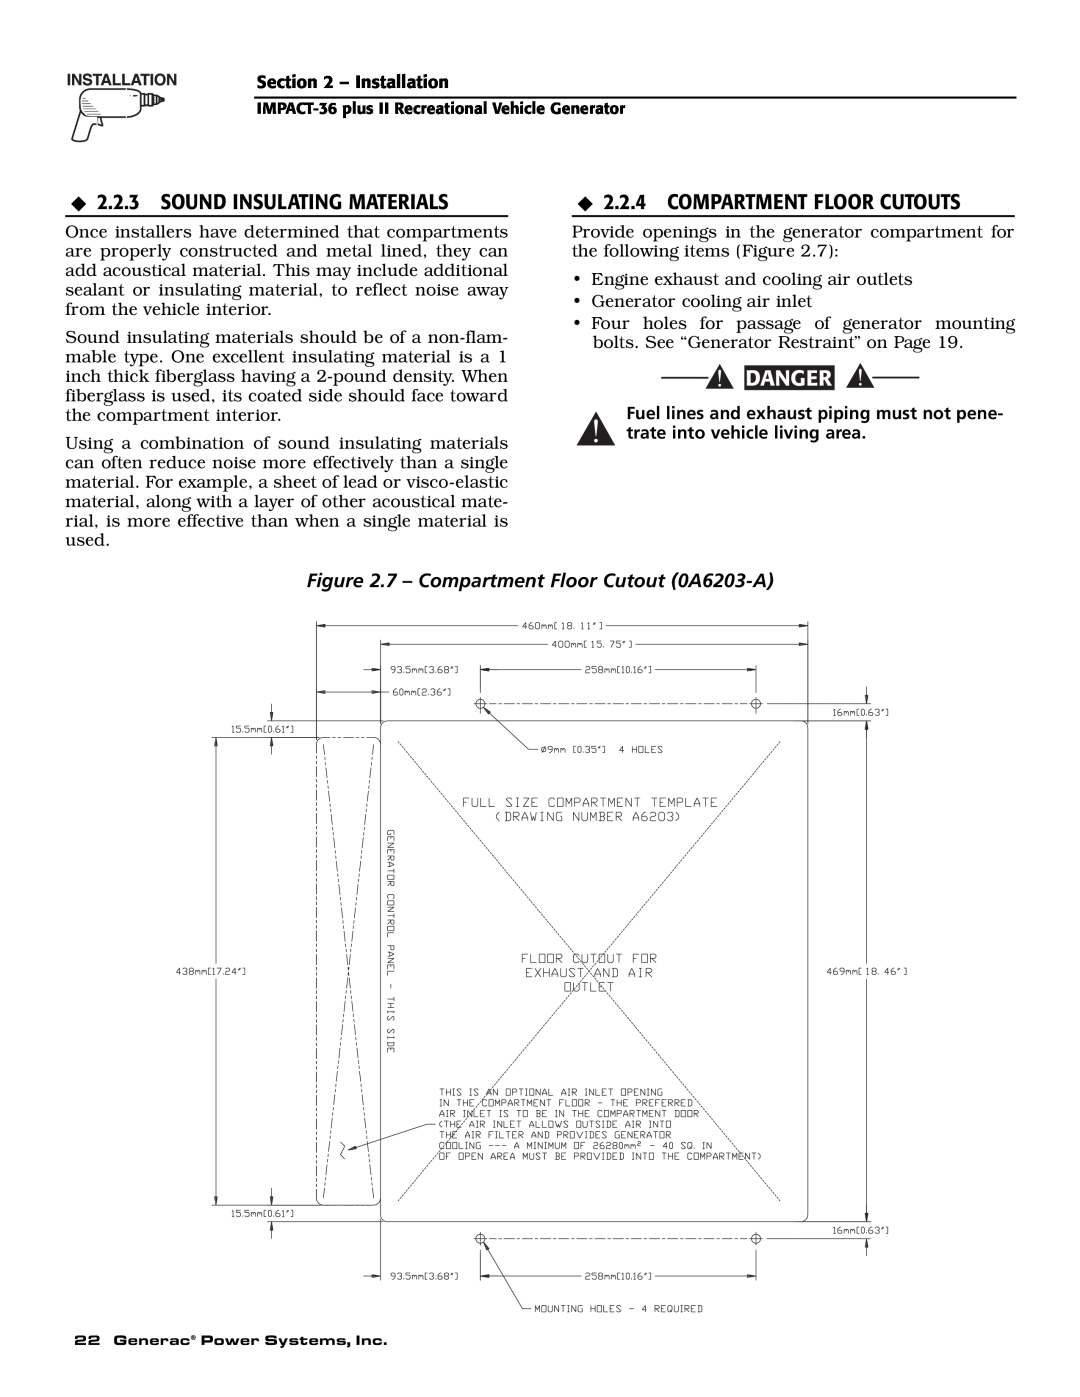 Generac 00941-3 Sound Insulating Materials, Compartment Floor Cutouts, Danger, 7 - Compartment Floor Cutout 0A6203-A 